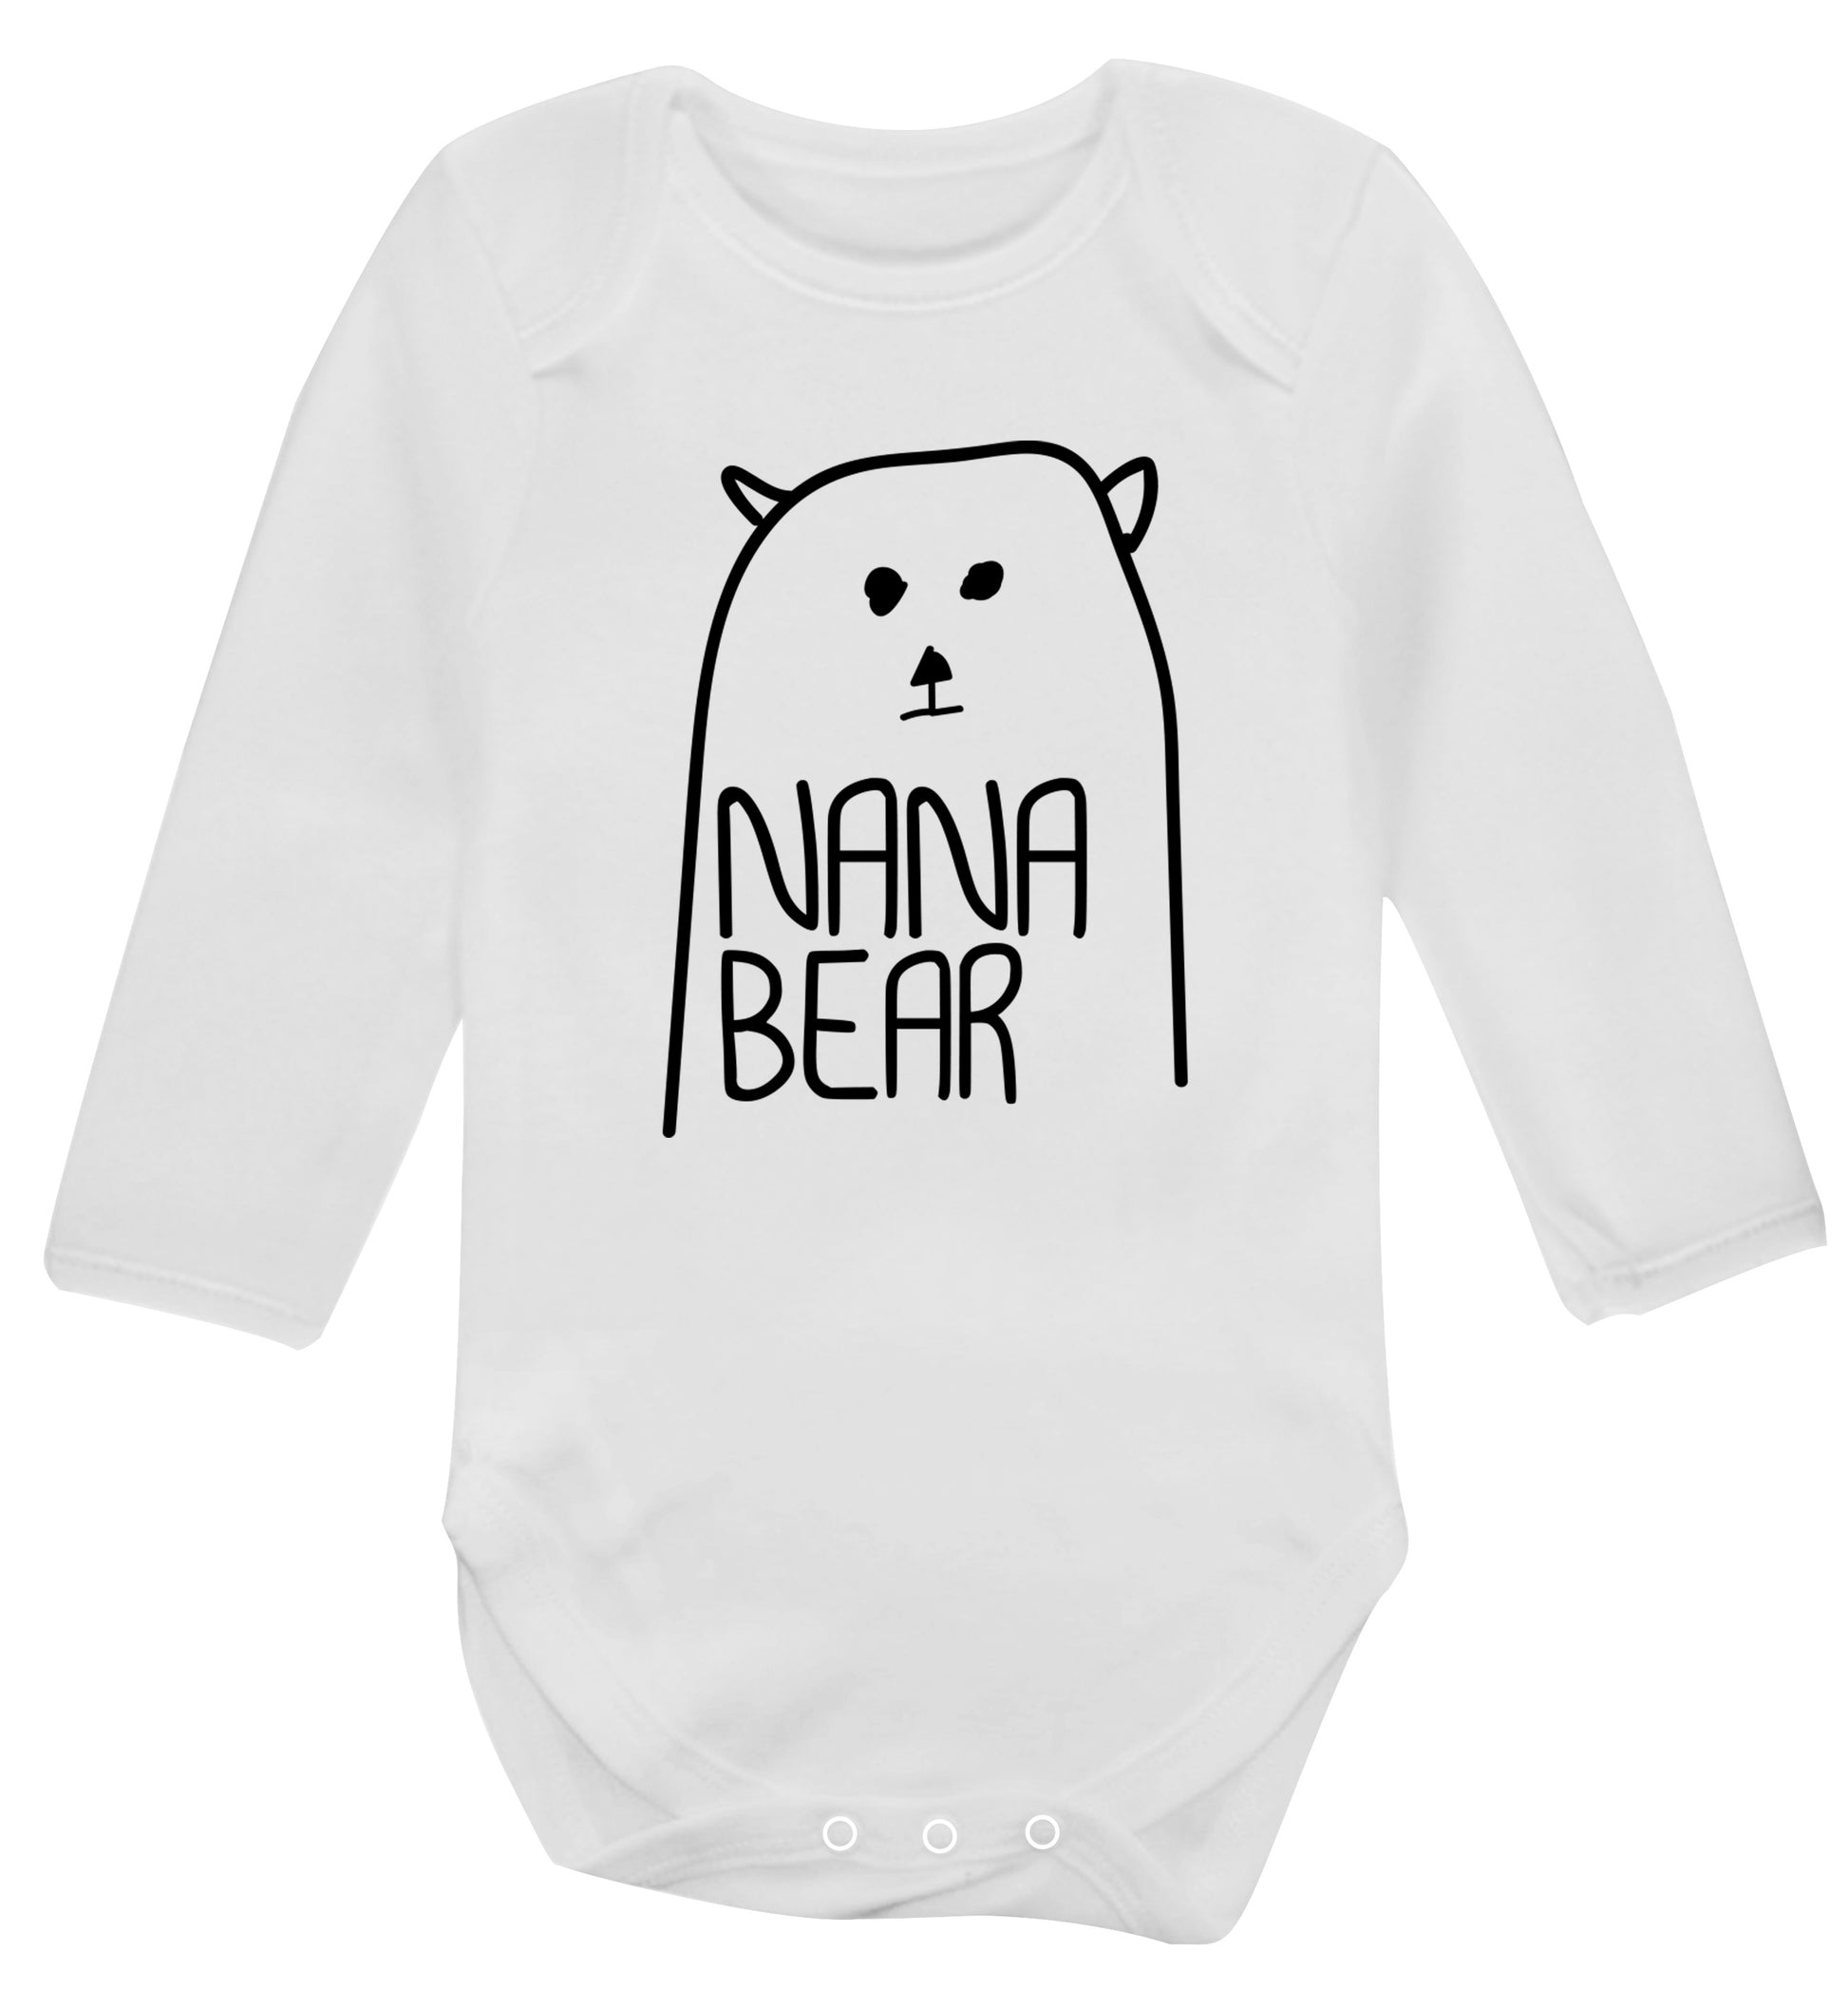 Nana bear Baby Vest long sleeved white 6-12 months